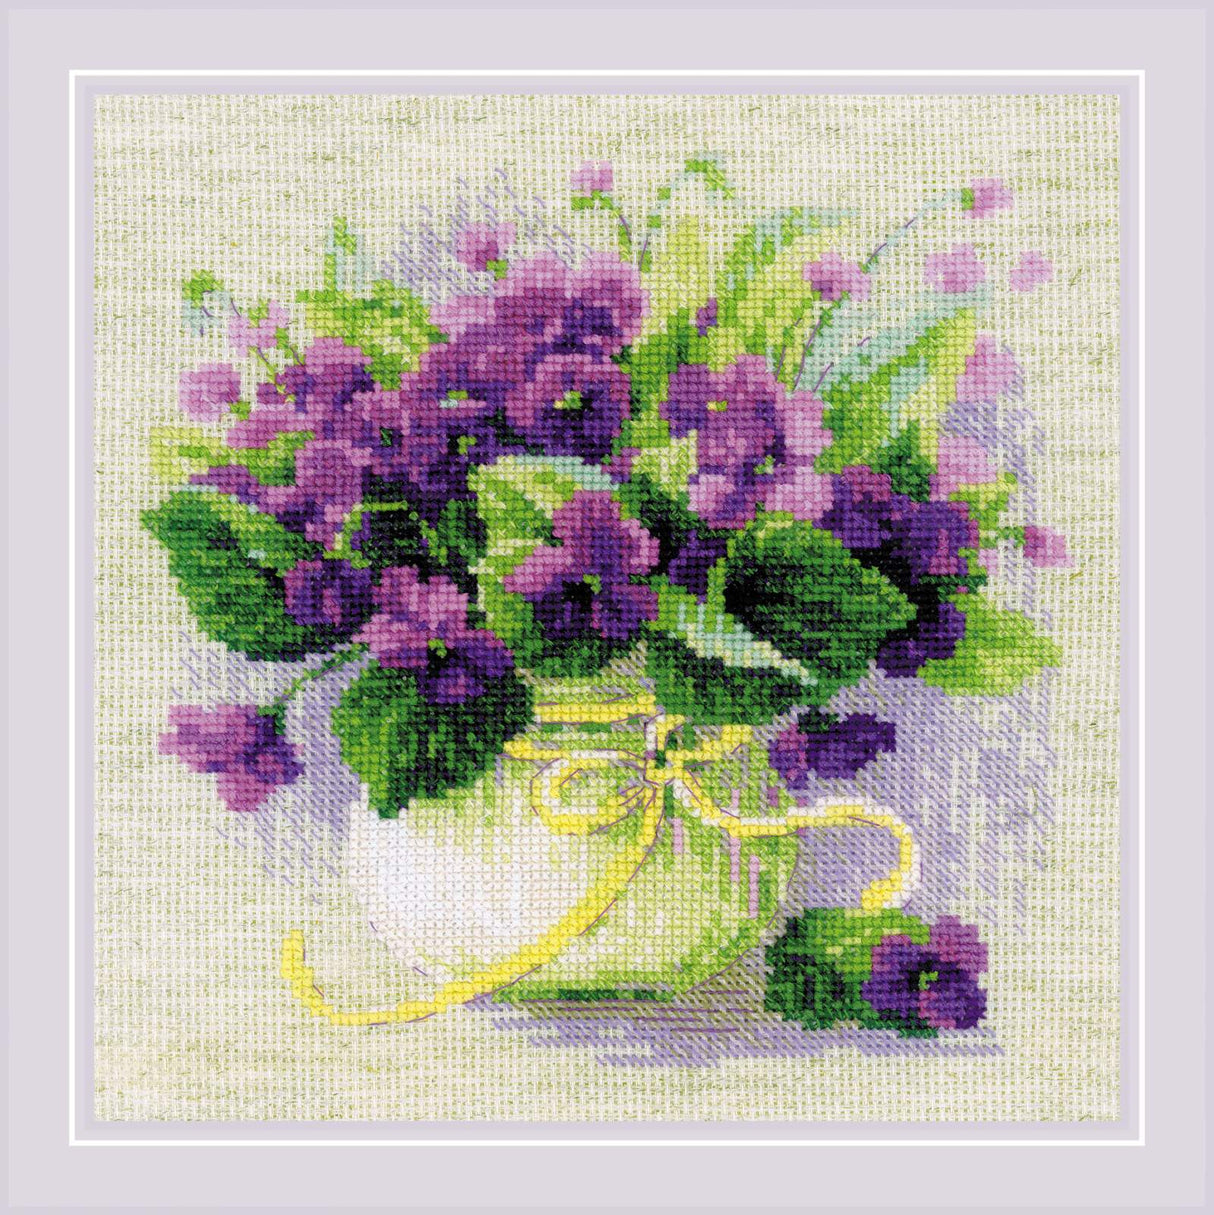 Kit de Punto de Cruz Riolis - "Violets in a Pot" (Violetas en una Maceta), 2091